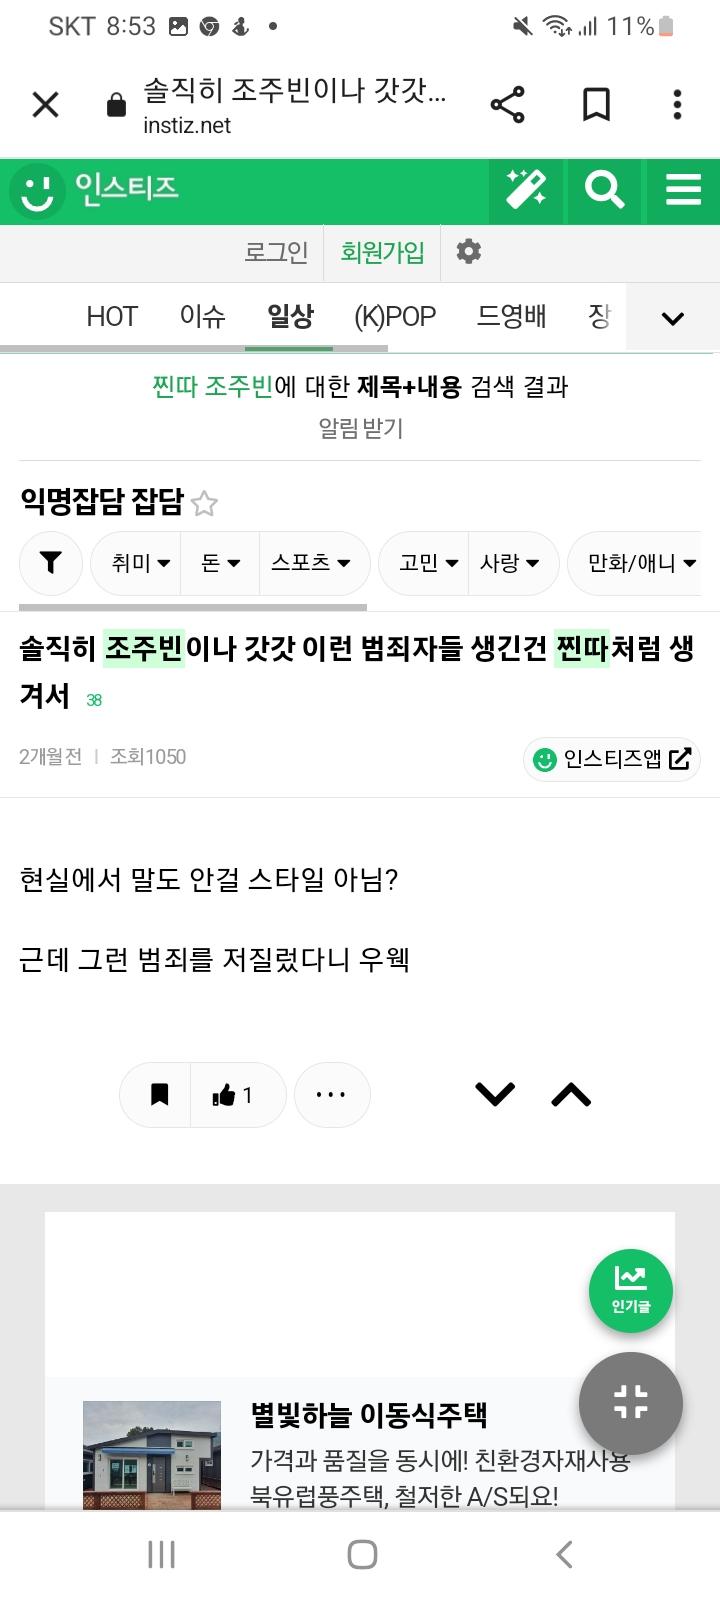 찐따비하 외모비하 자칭 인권전사 페미니스트들 실체